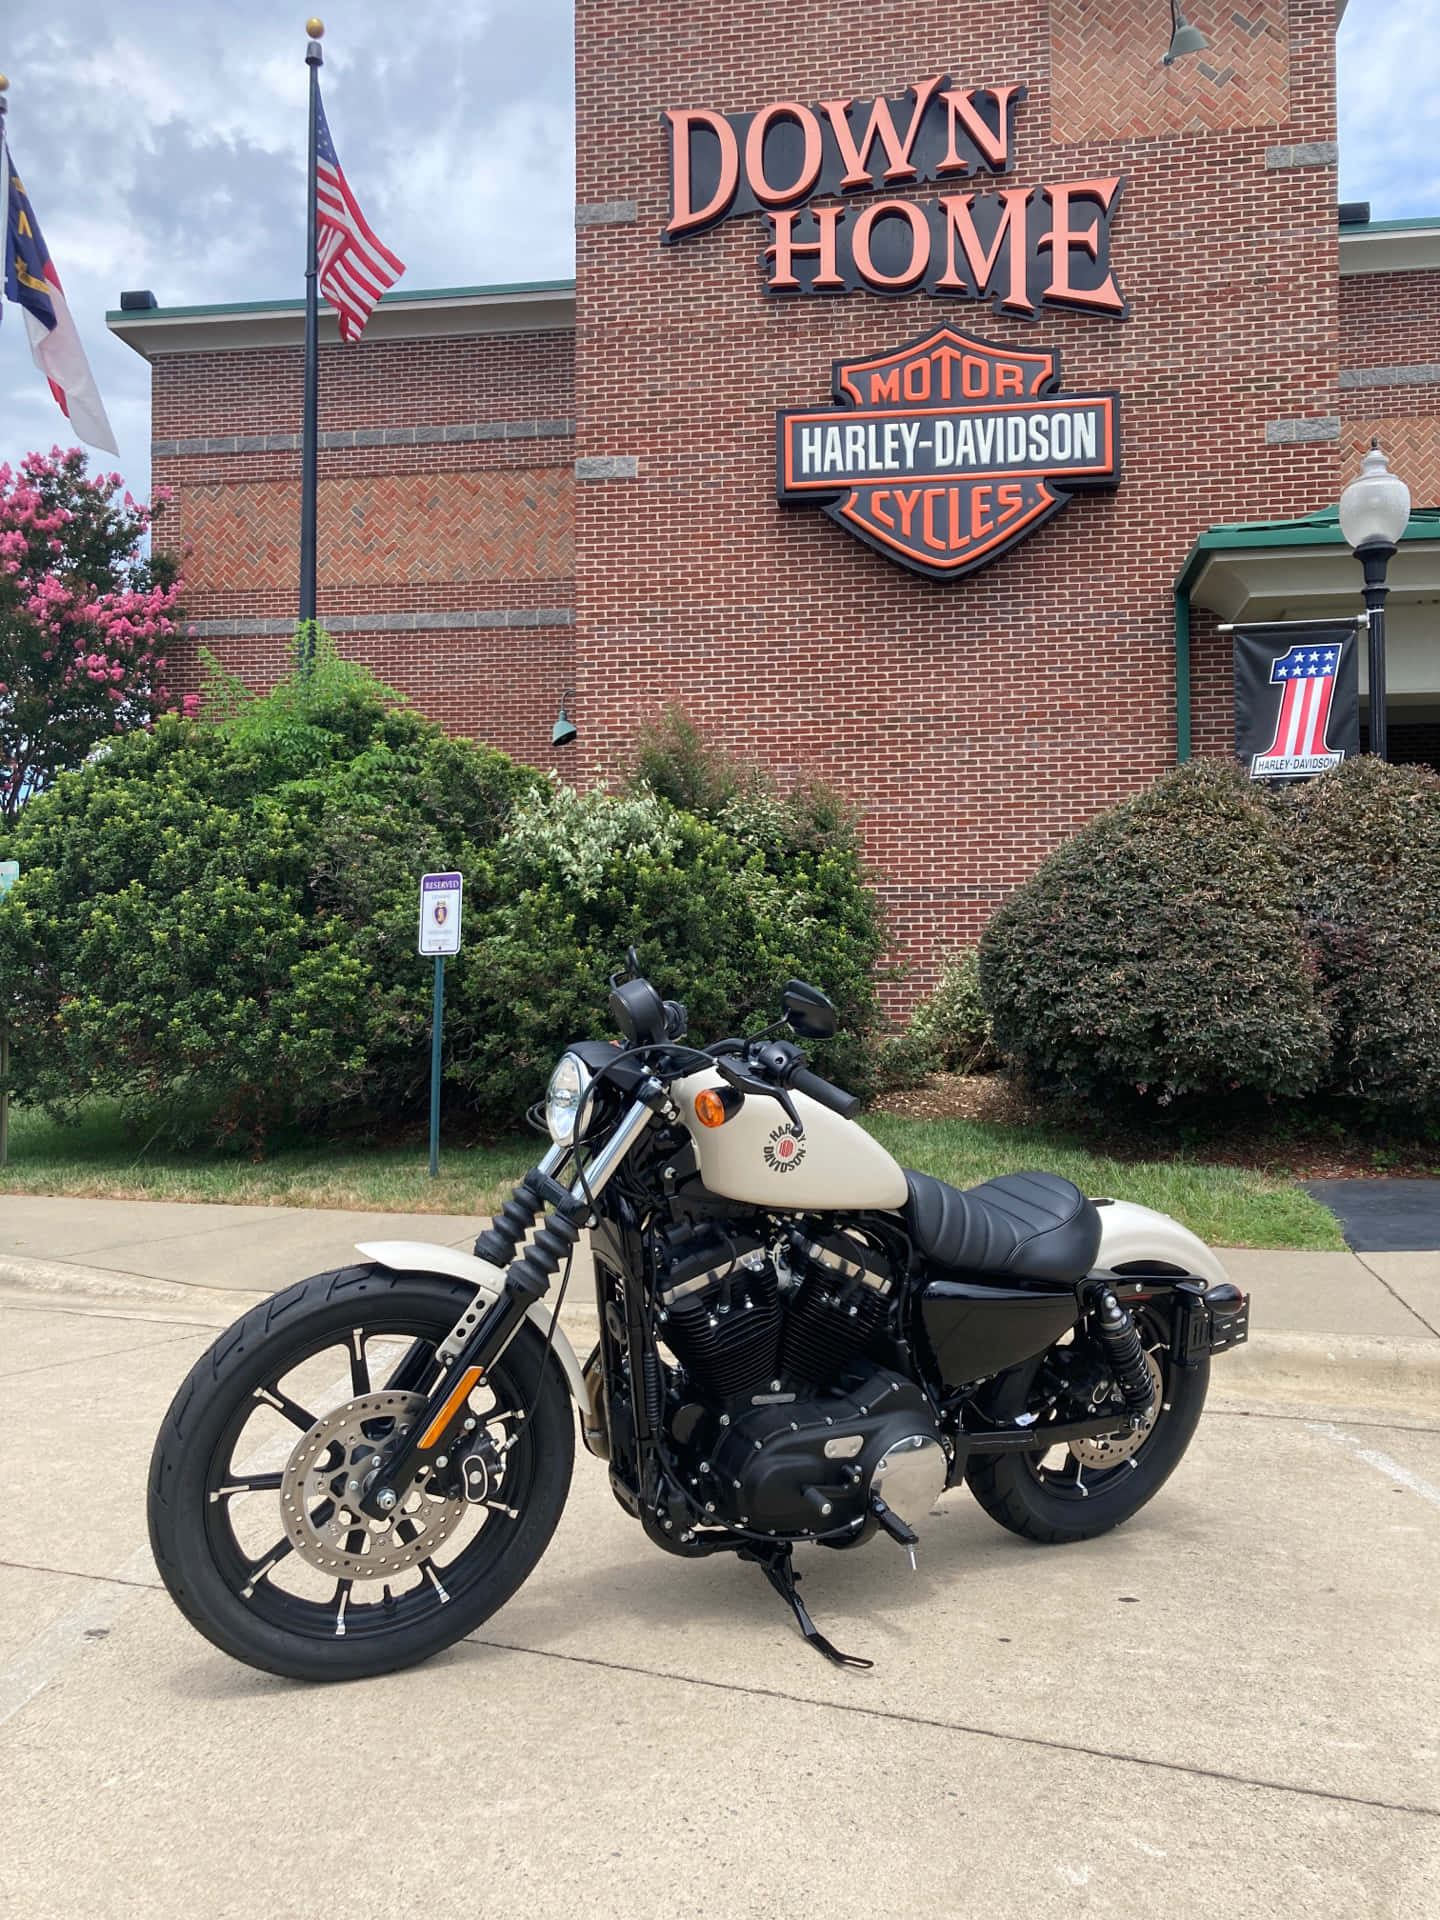 Down Home Harley-davidson In St. Louis, Missouri